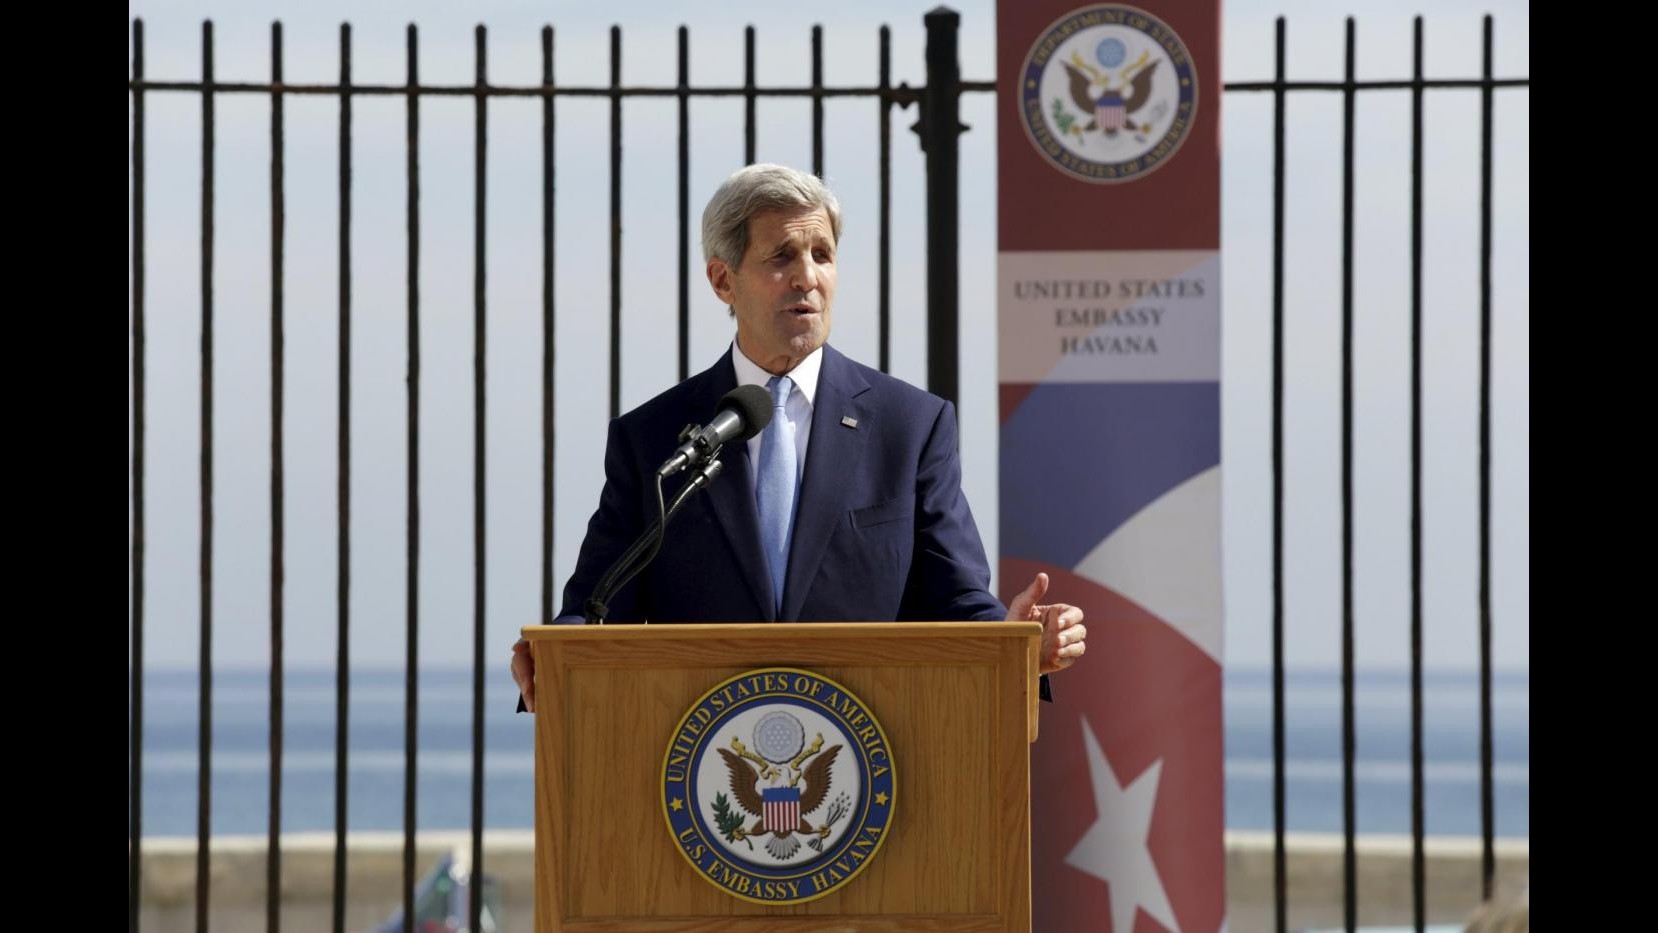 Cuba-Usa, Kerry: Democrazia genuina è miglior opzione per cubani